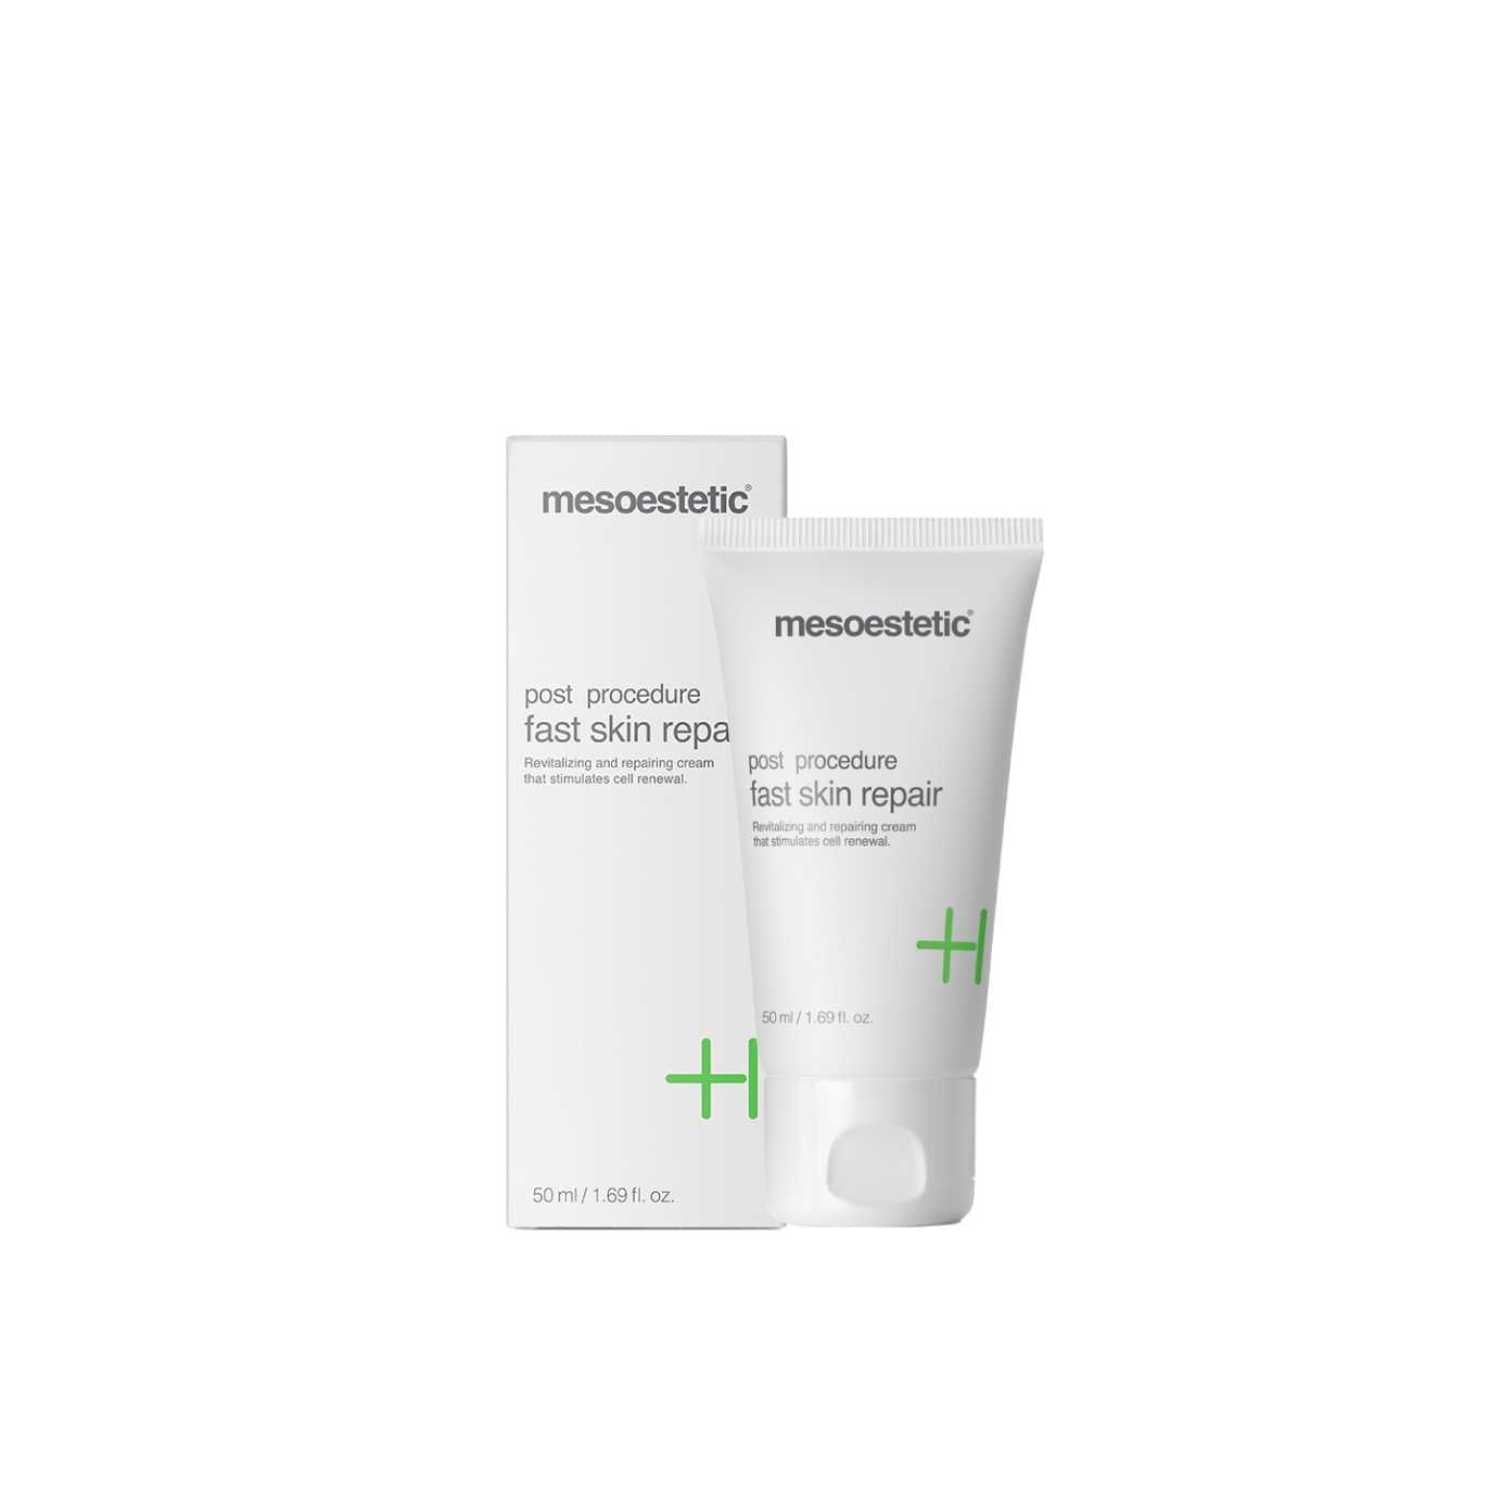 Mesoestetic®fast skin repair